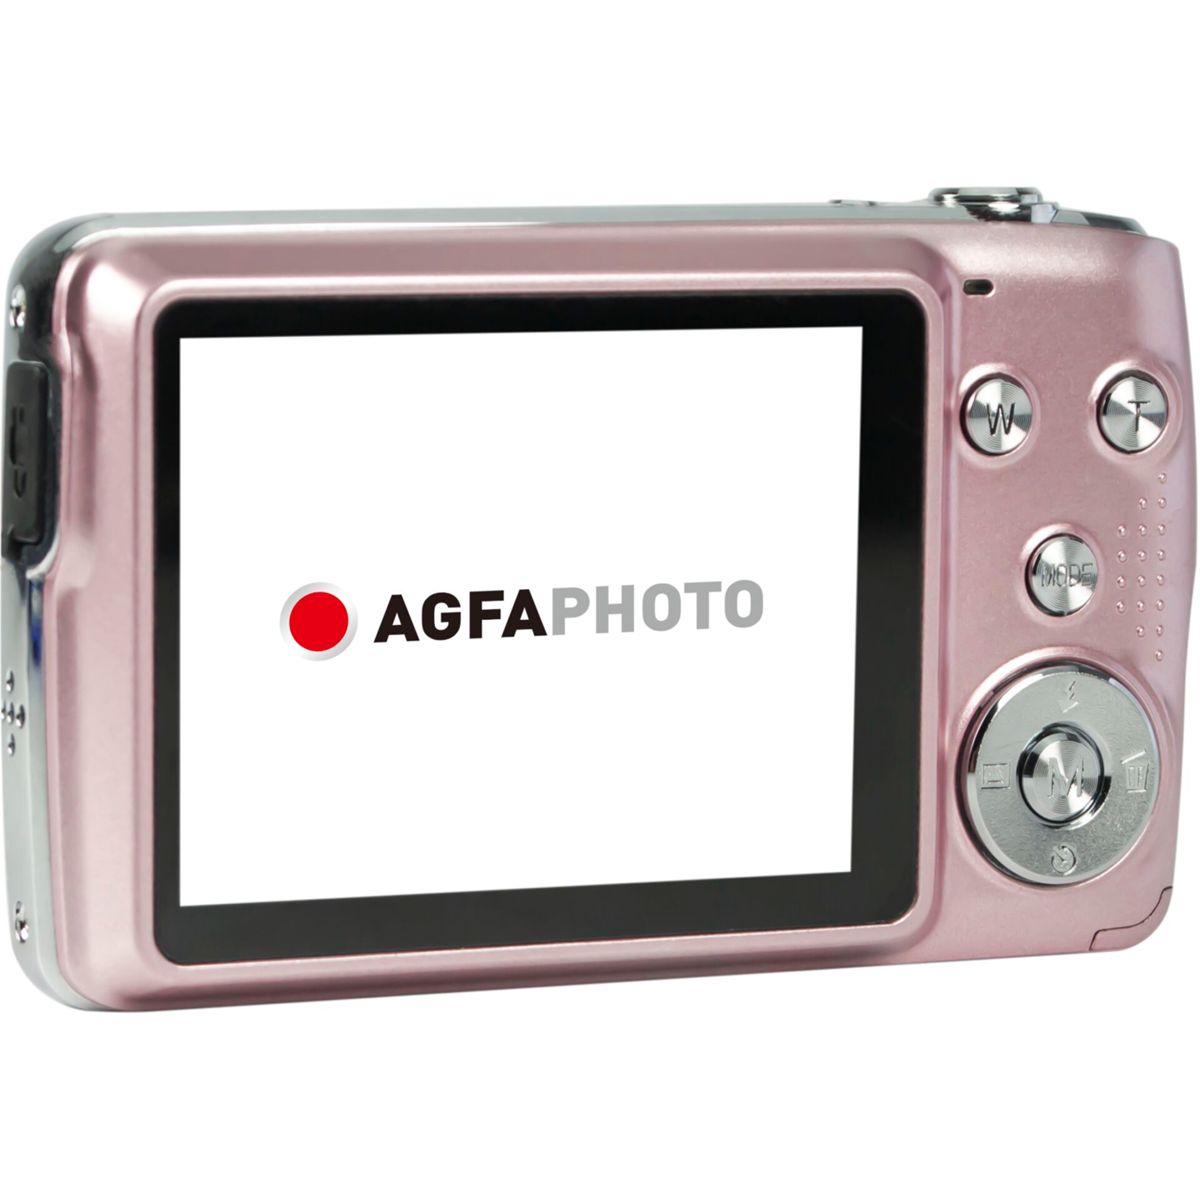 AGFAPHOTO Realishot DC8200 pink pink- Digitalkamera